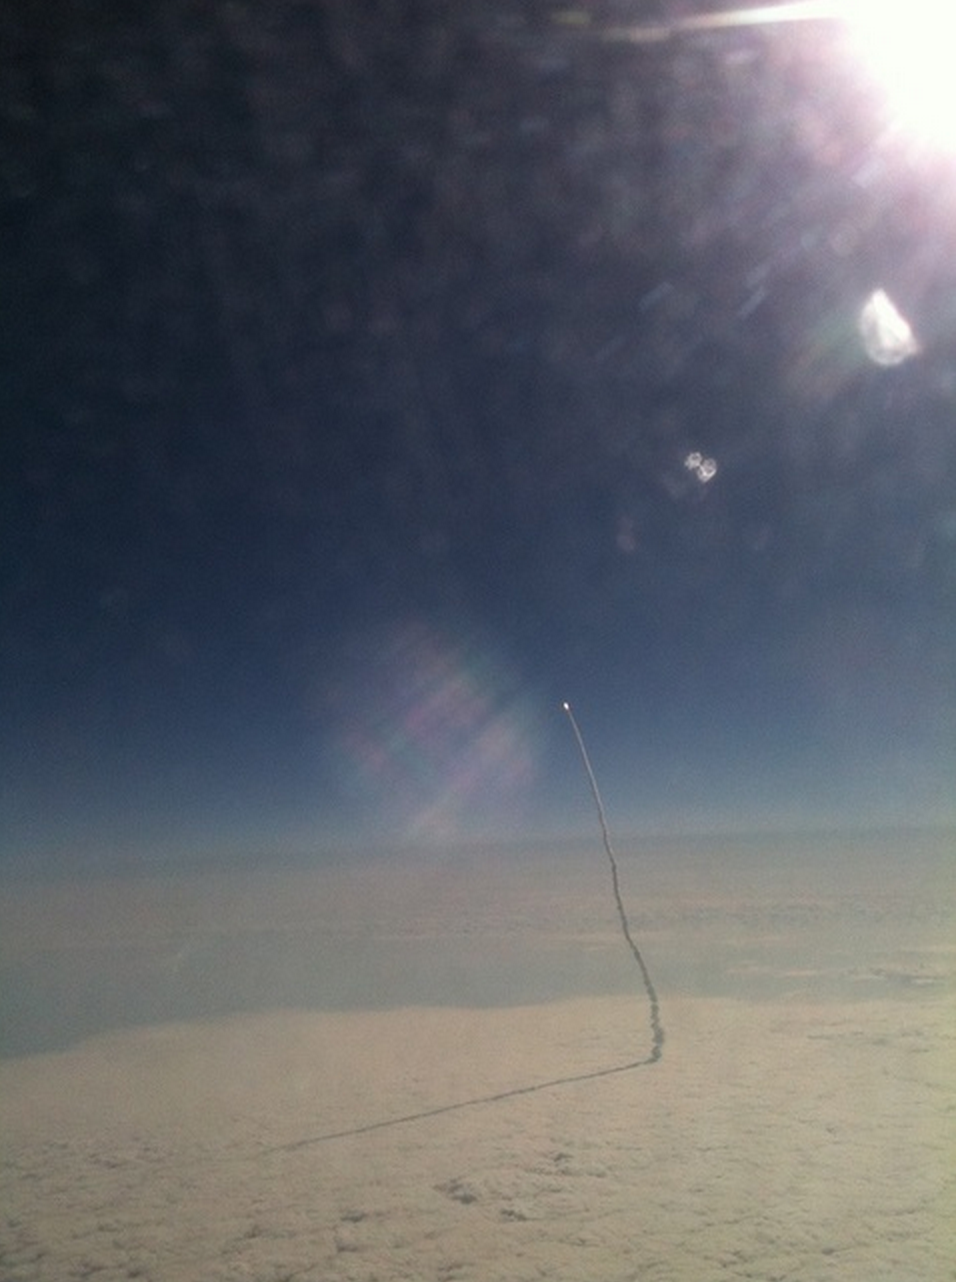 4. 一位飞机乘客Stefanie Gordon用iPhone拍下了 奋进号太空梭(Endeavour )正在飞向宇宙的瞬间。